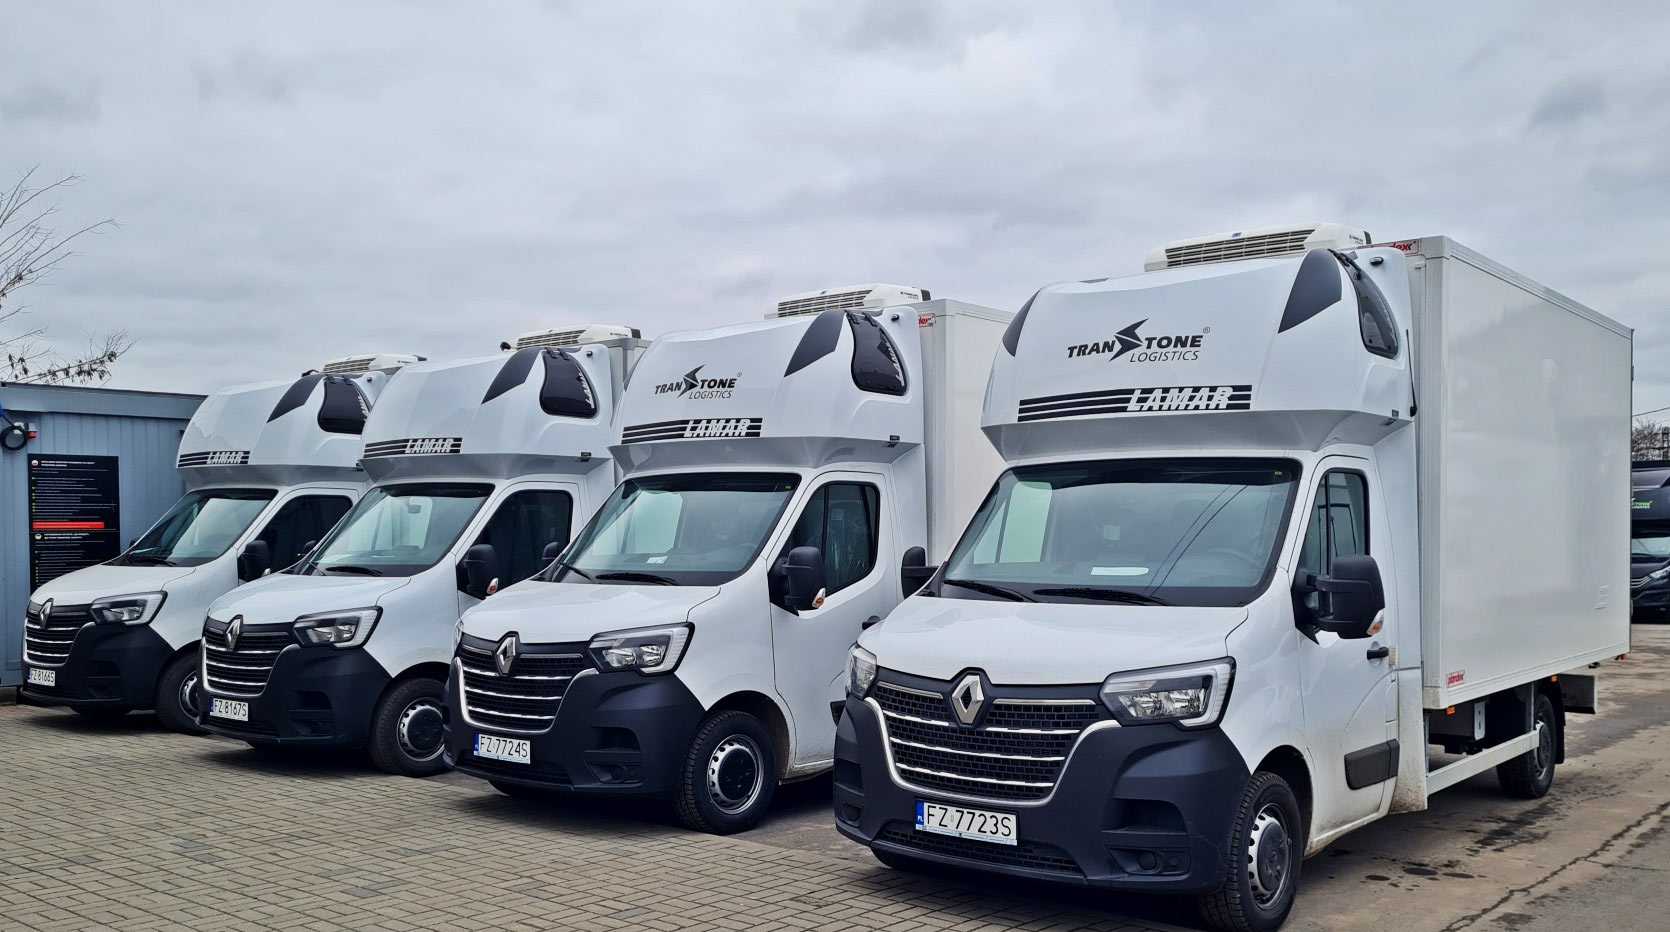 New 10 frigo vans have already joined the Transtone family